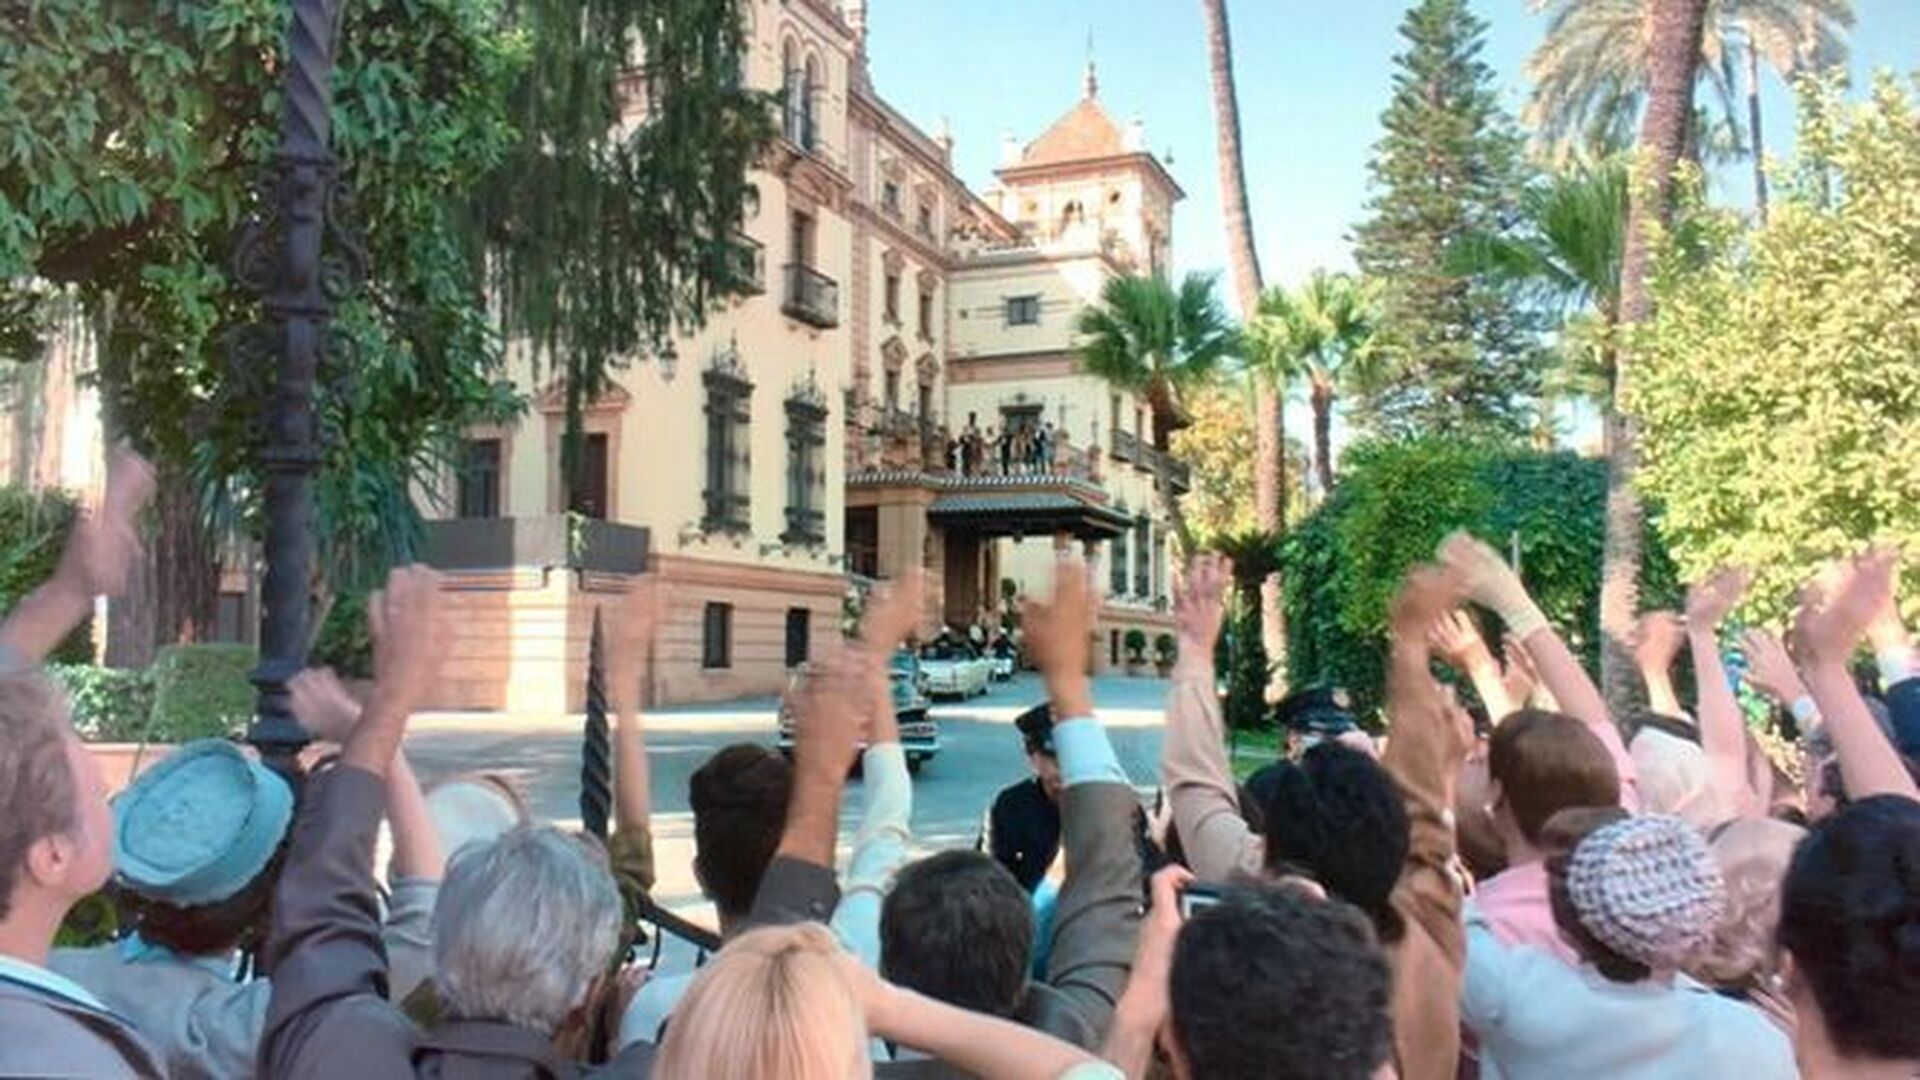 Una de las escenas de la cuarta temporada de The Crown grabada en el hotel Alfonso XIII que simulaba ser una villa californiana.